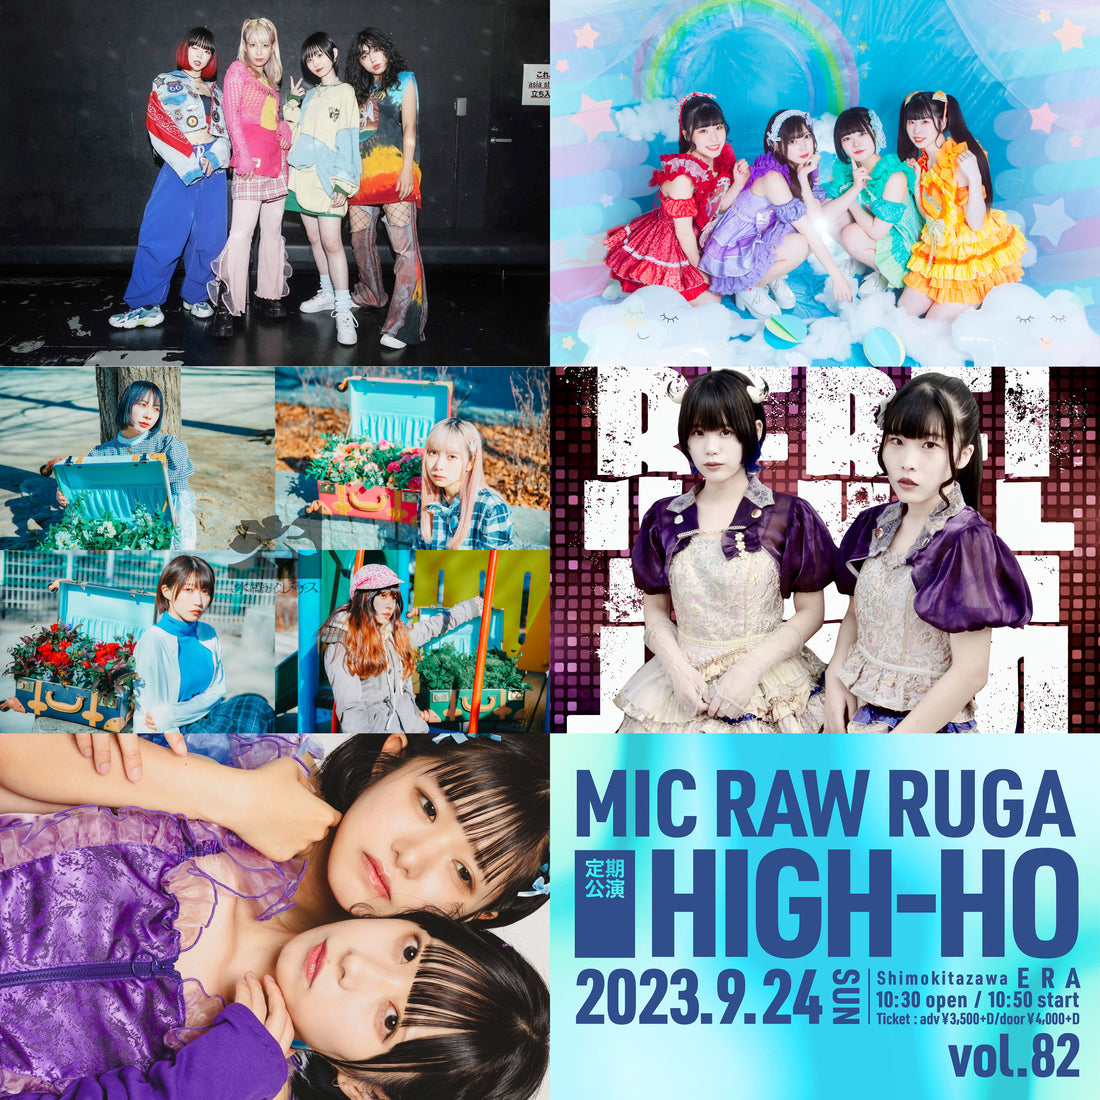 9/24(日・昼)「MIC RAW RUGA 定期公演 HIGH-HO vol.82」